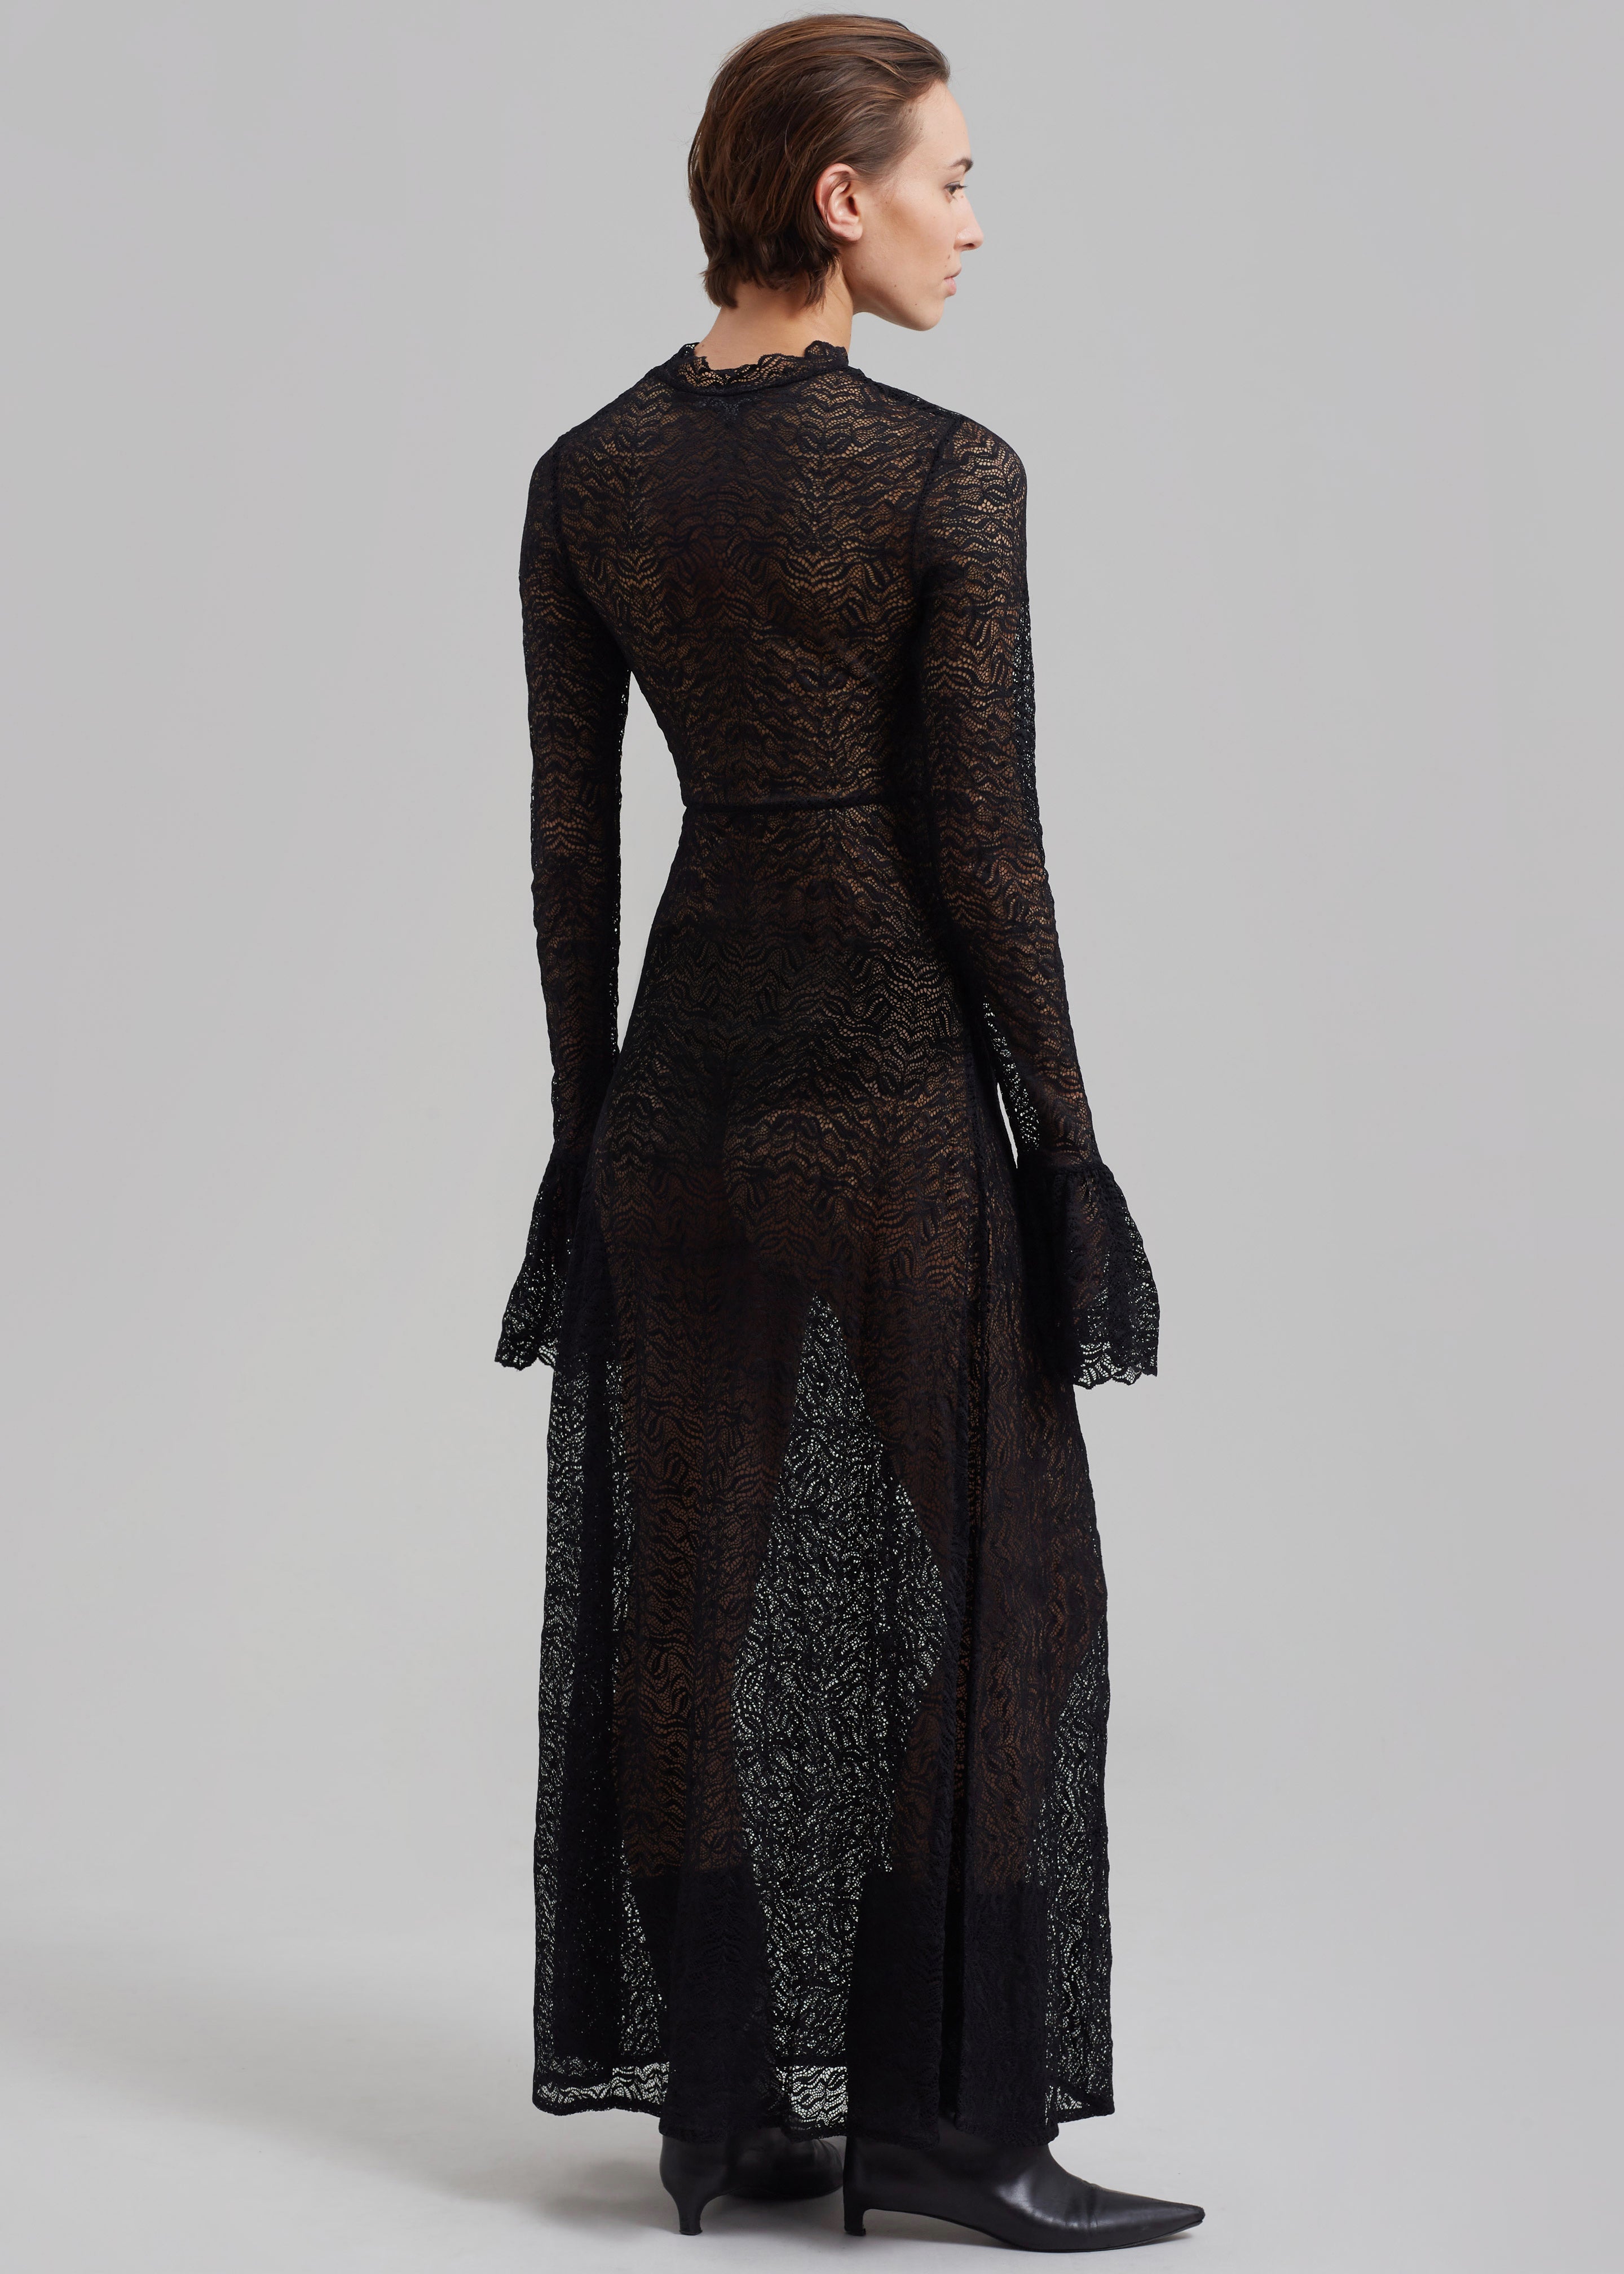 Beaufille Emmeline Dress - Black - 8